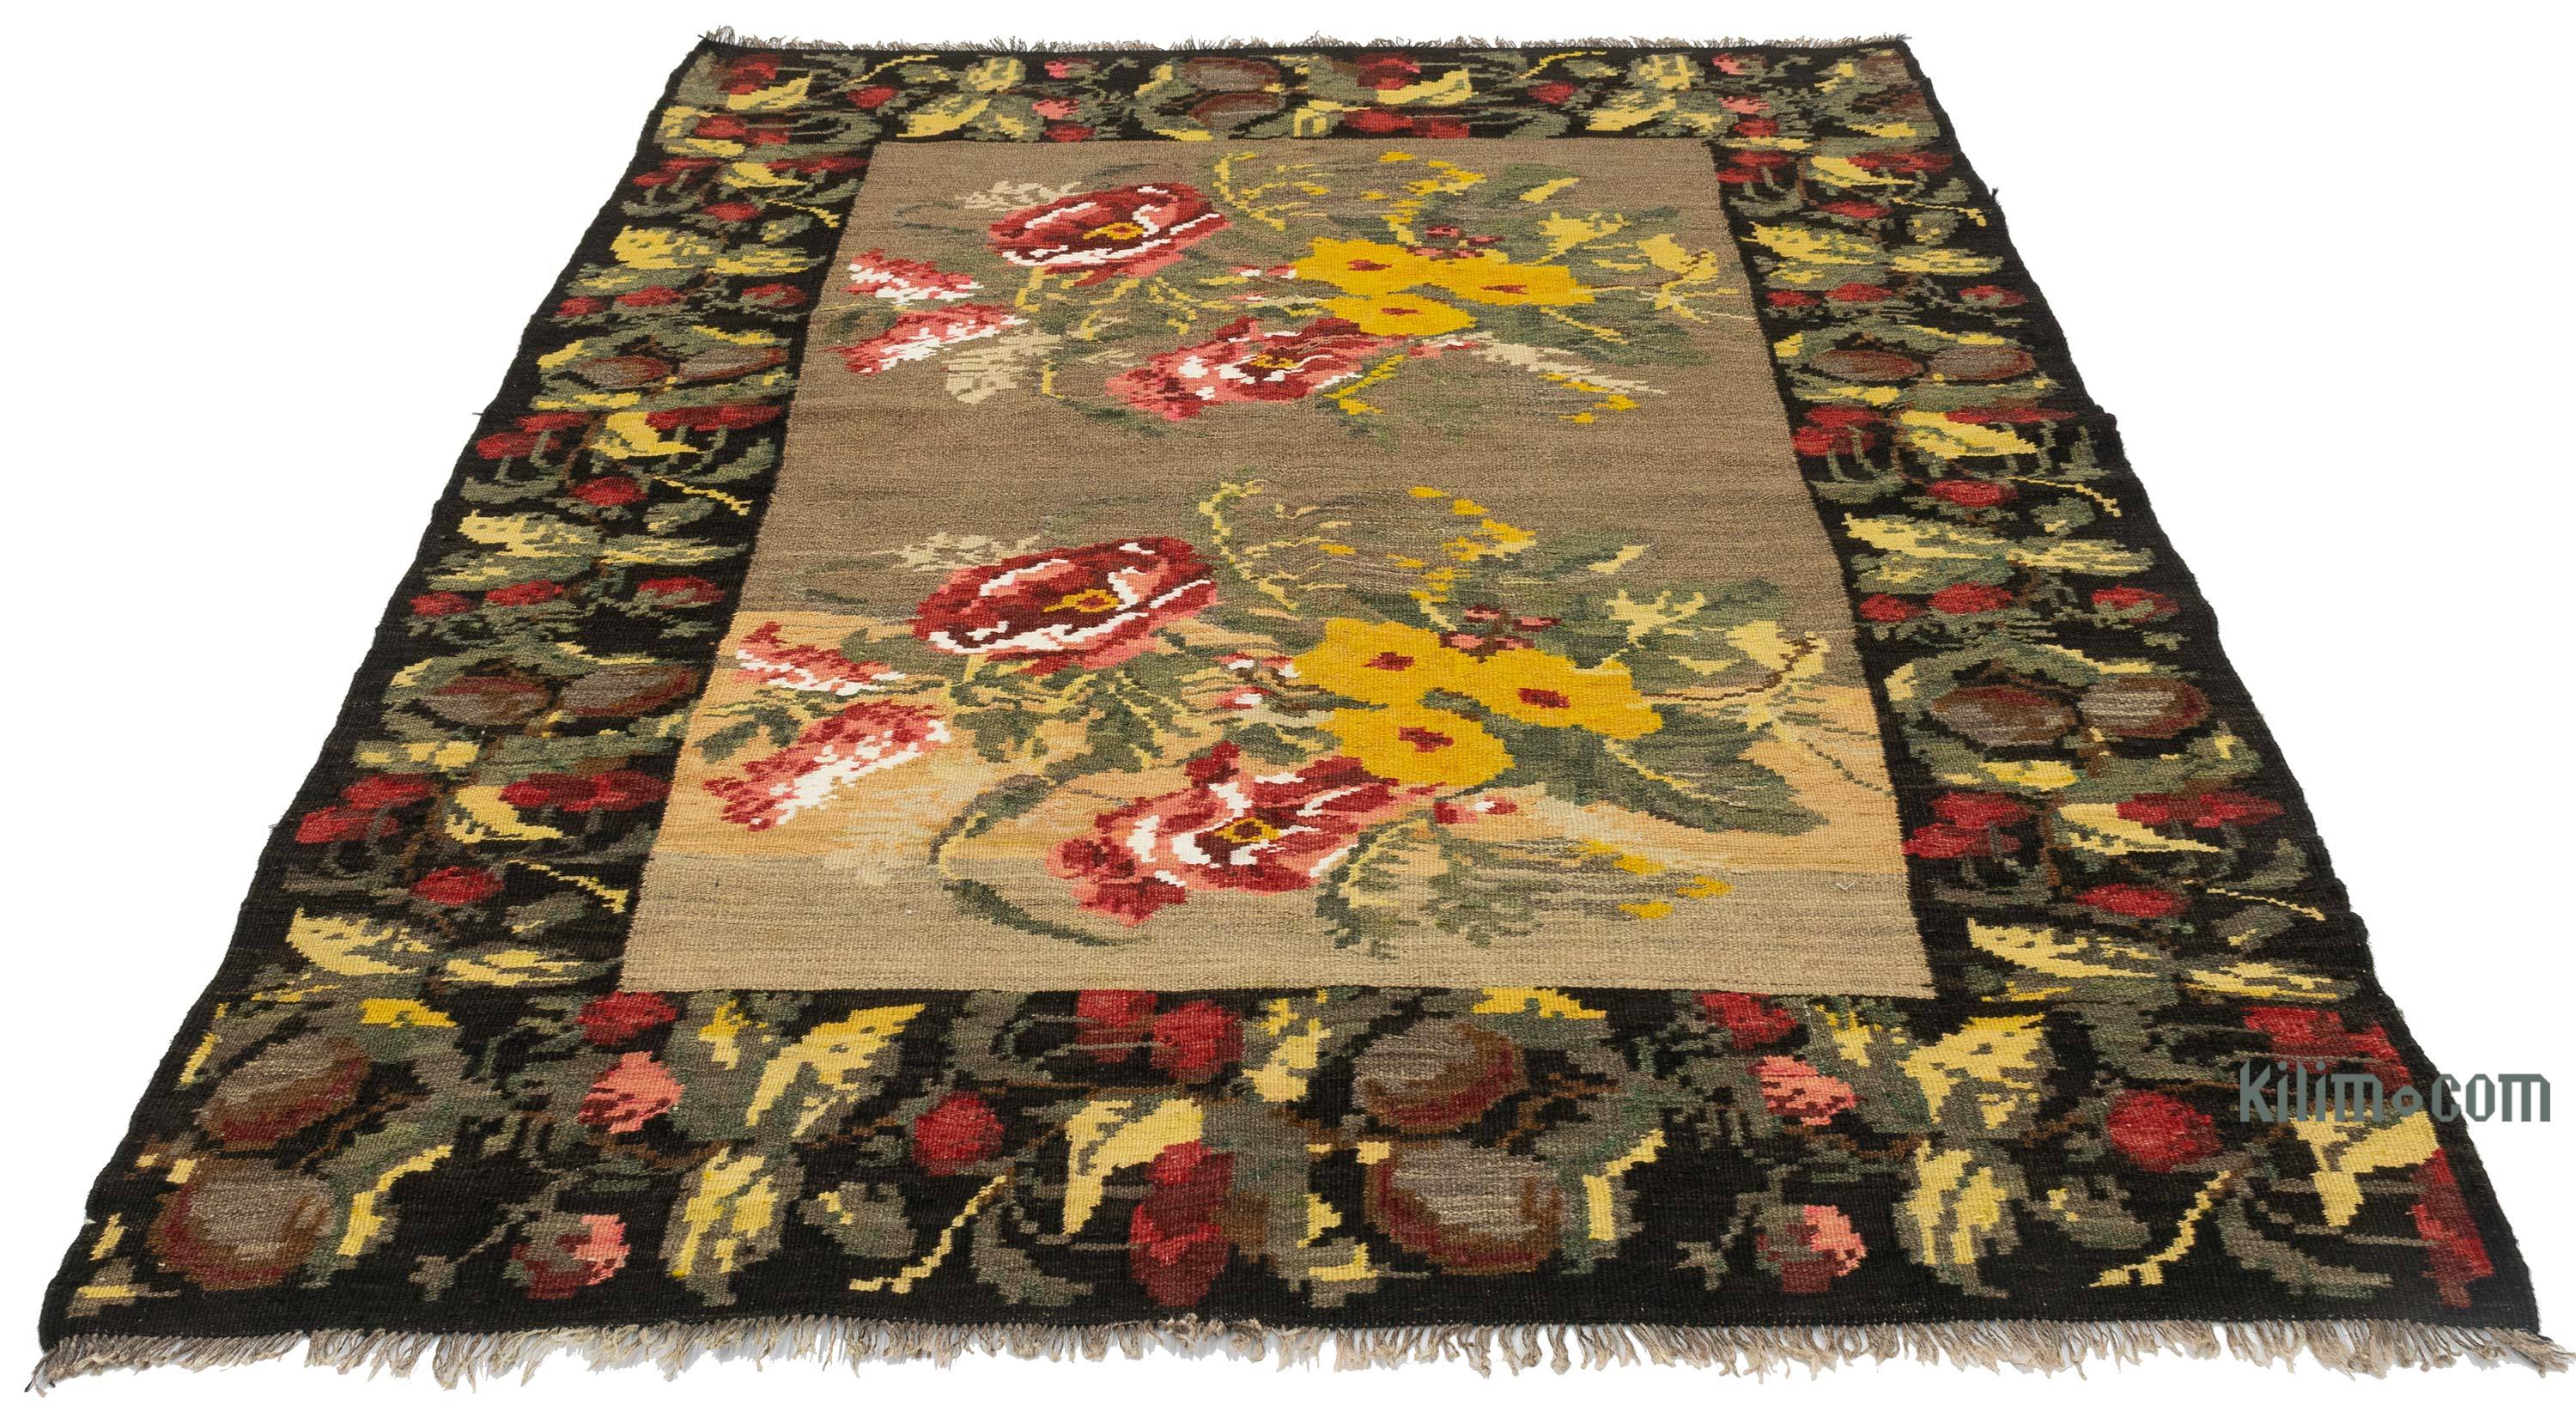  Alfombras antiguas, alfombras turcas, alfombras pequeñas, de  1.5x2.7 pies, alfombra de bebé, alfombras de suelo, alfombra colorida,  alfombra vintage, alfombra de decoración de granja, alfombras estéticas,  alfombras de cocina, alfombras de